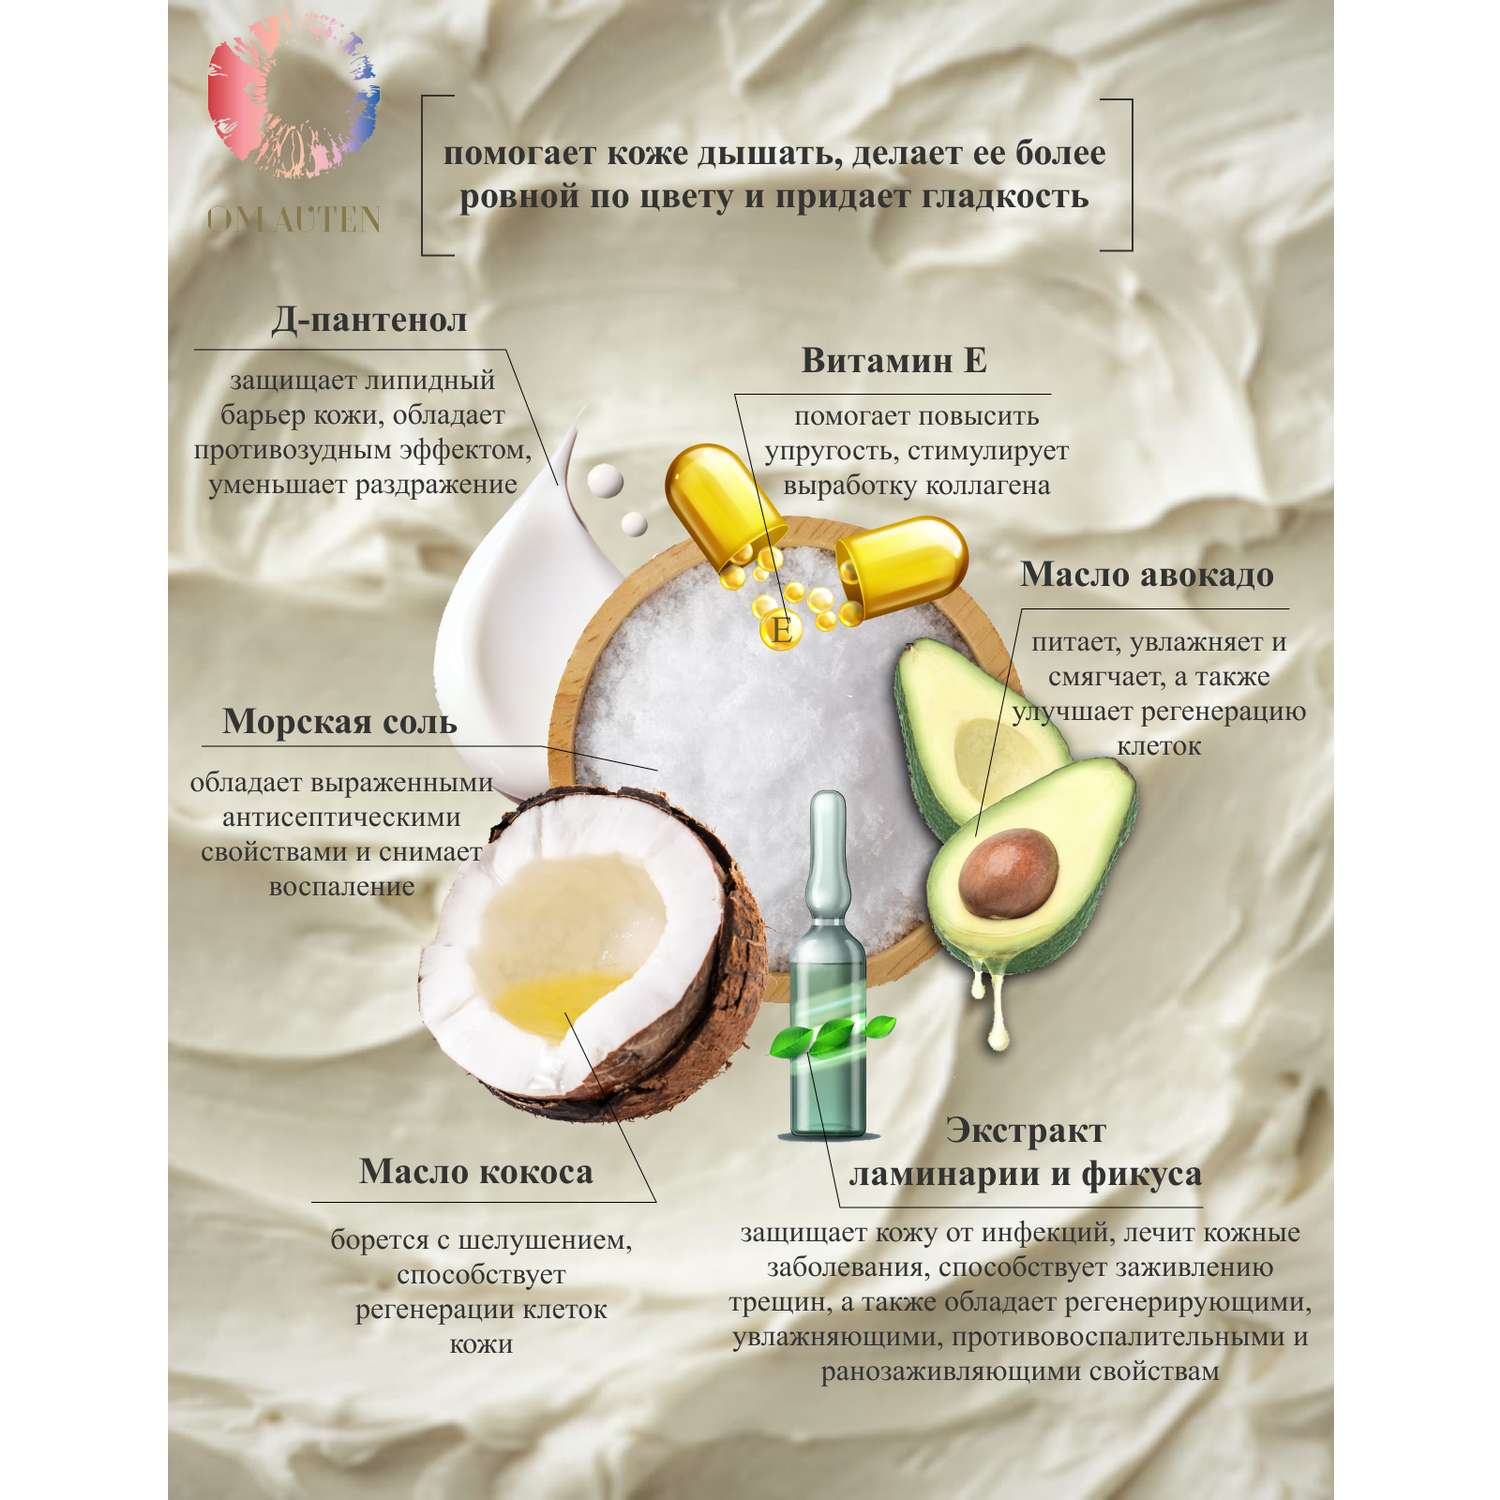 Скраб-крем для тела OMAUTEN увлажняющий тонизирующий с маслом ши авокадо и витамином Е - фото 2